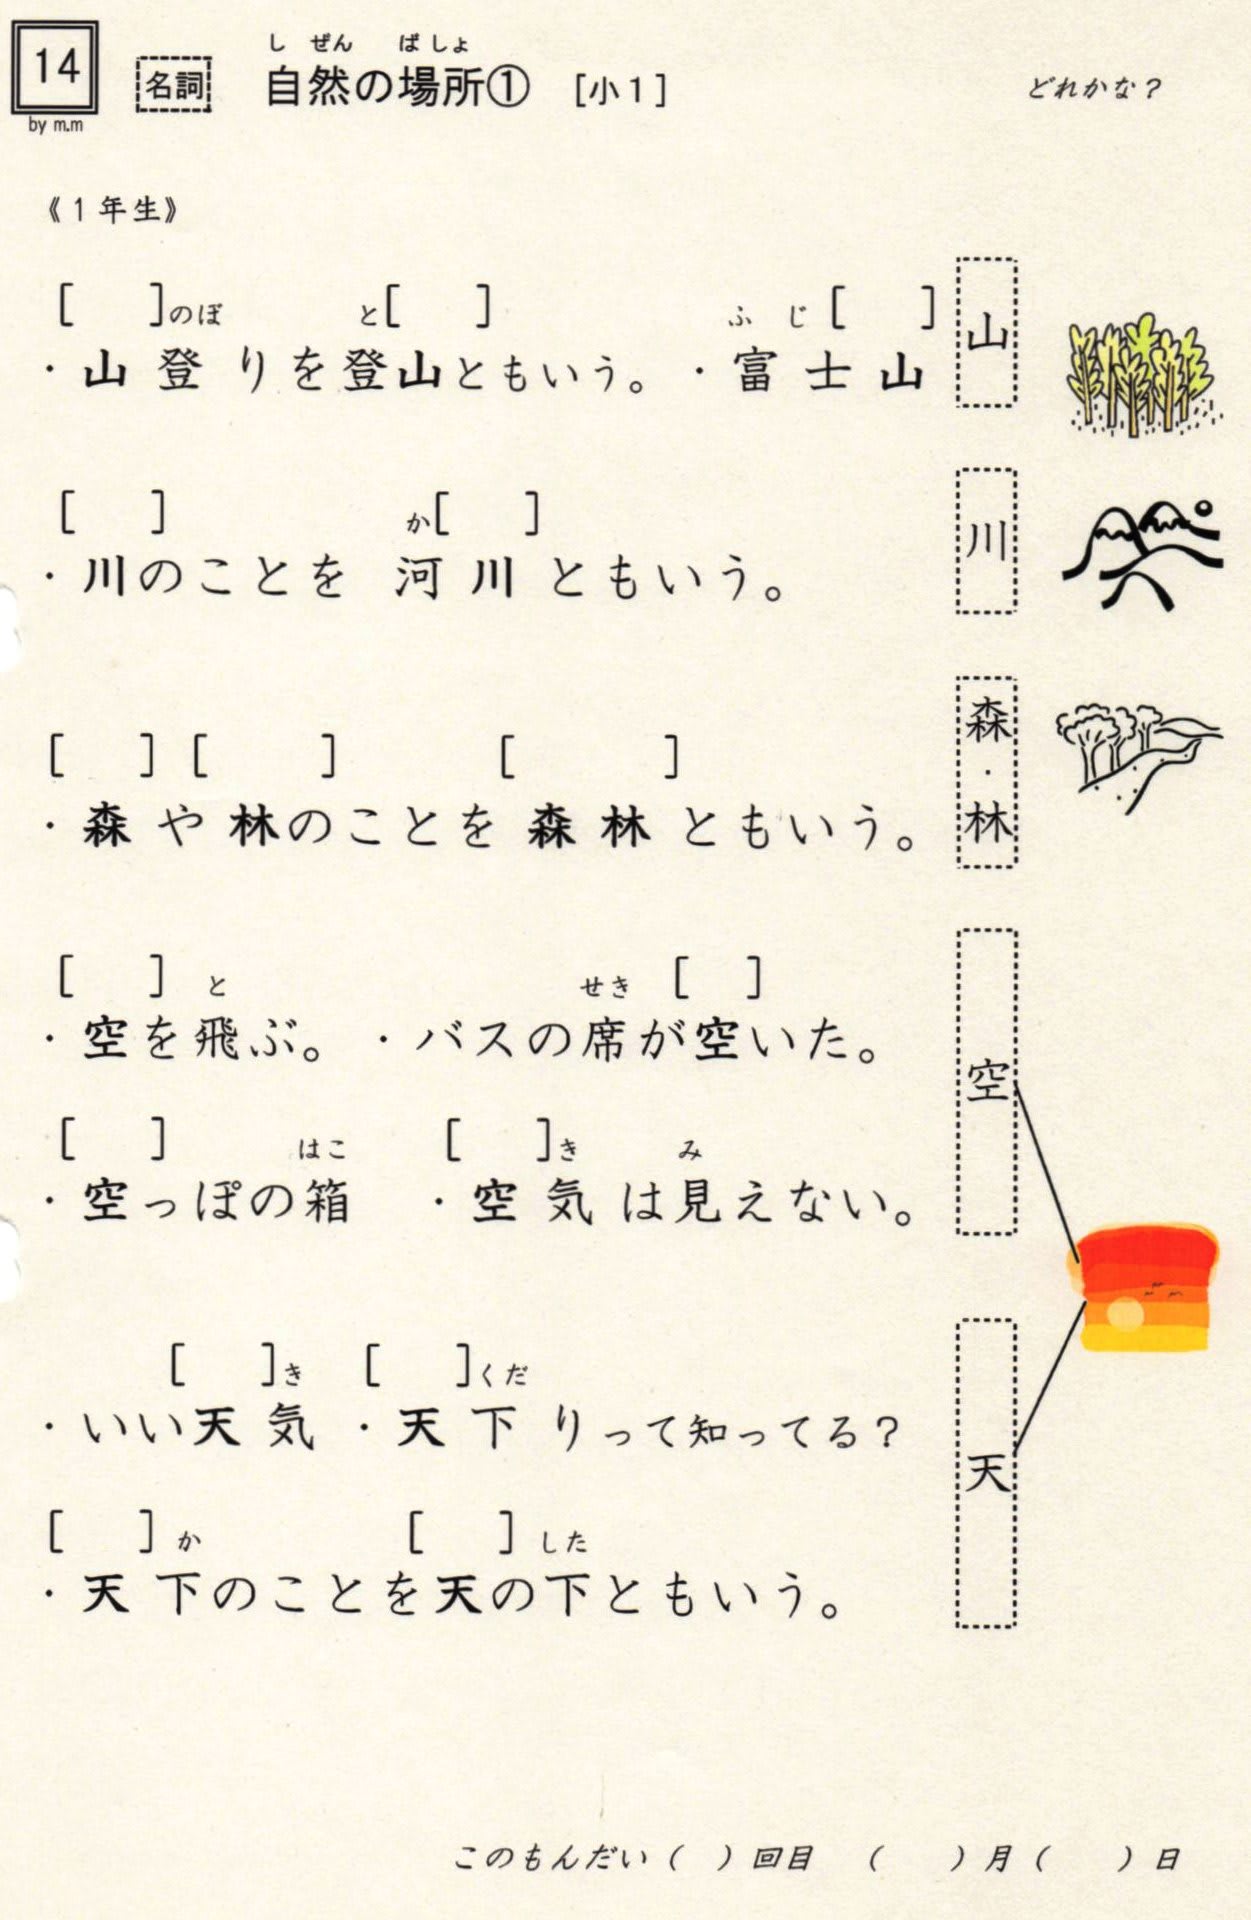 小学校漢字の読み 14 自然の場所 1年 実は低学年配当漢字ほど難しい読みがある やおよろずの神々の棲む国で